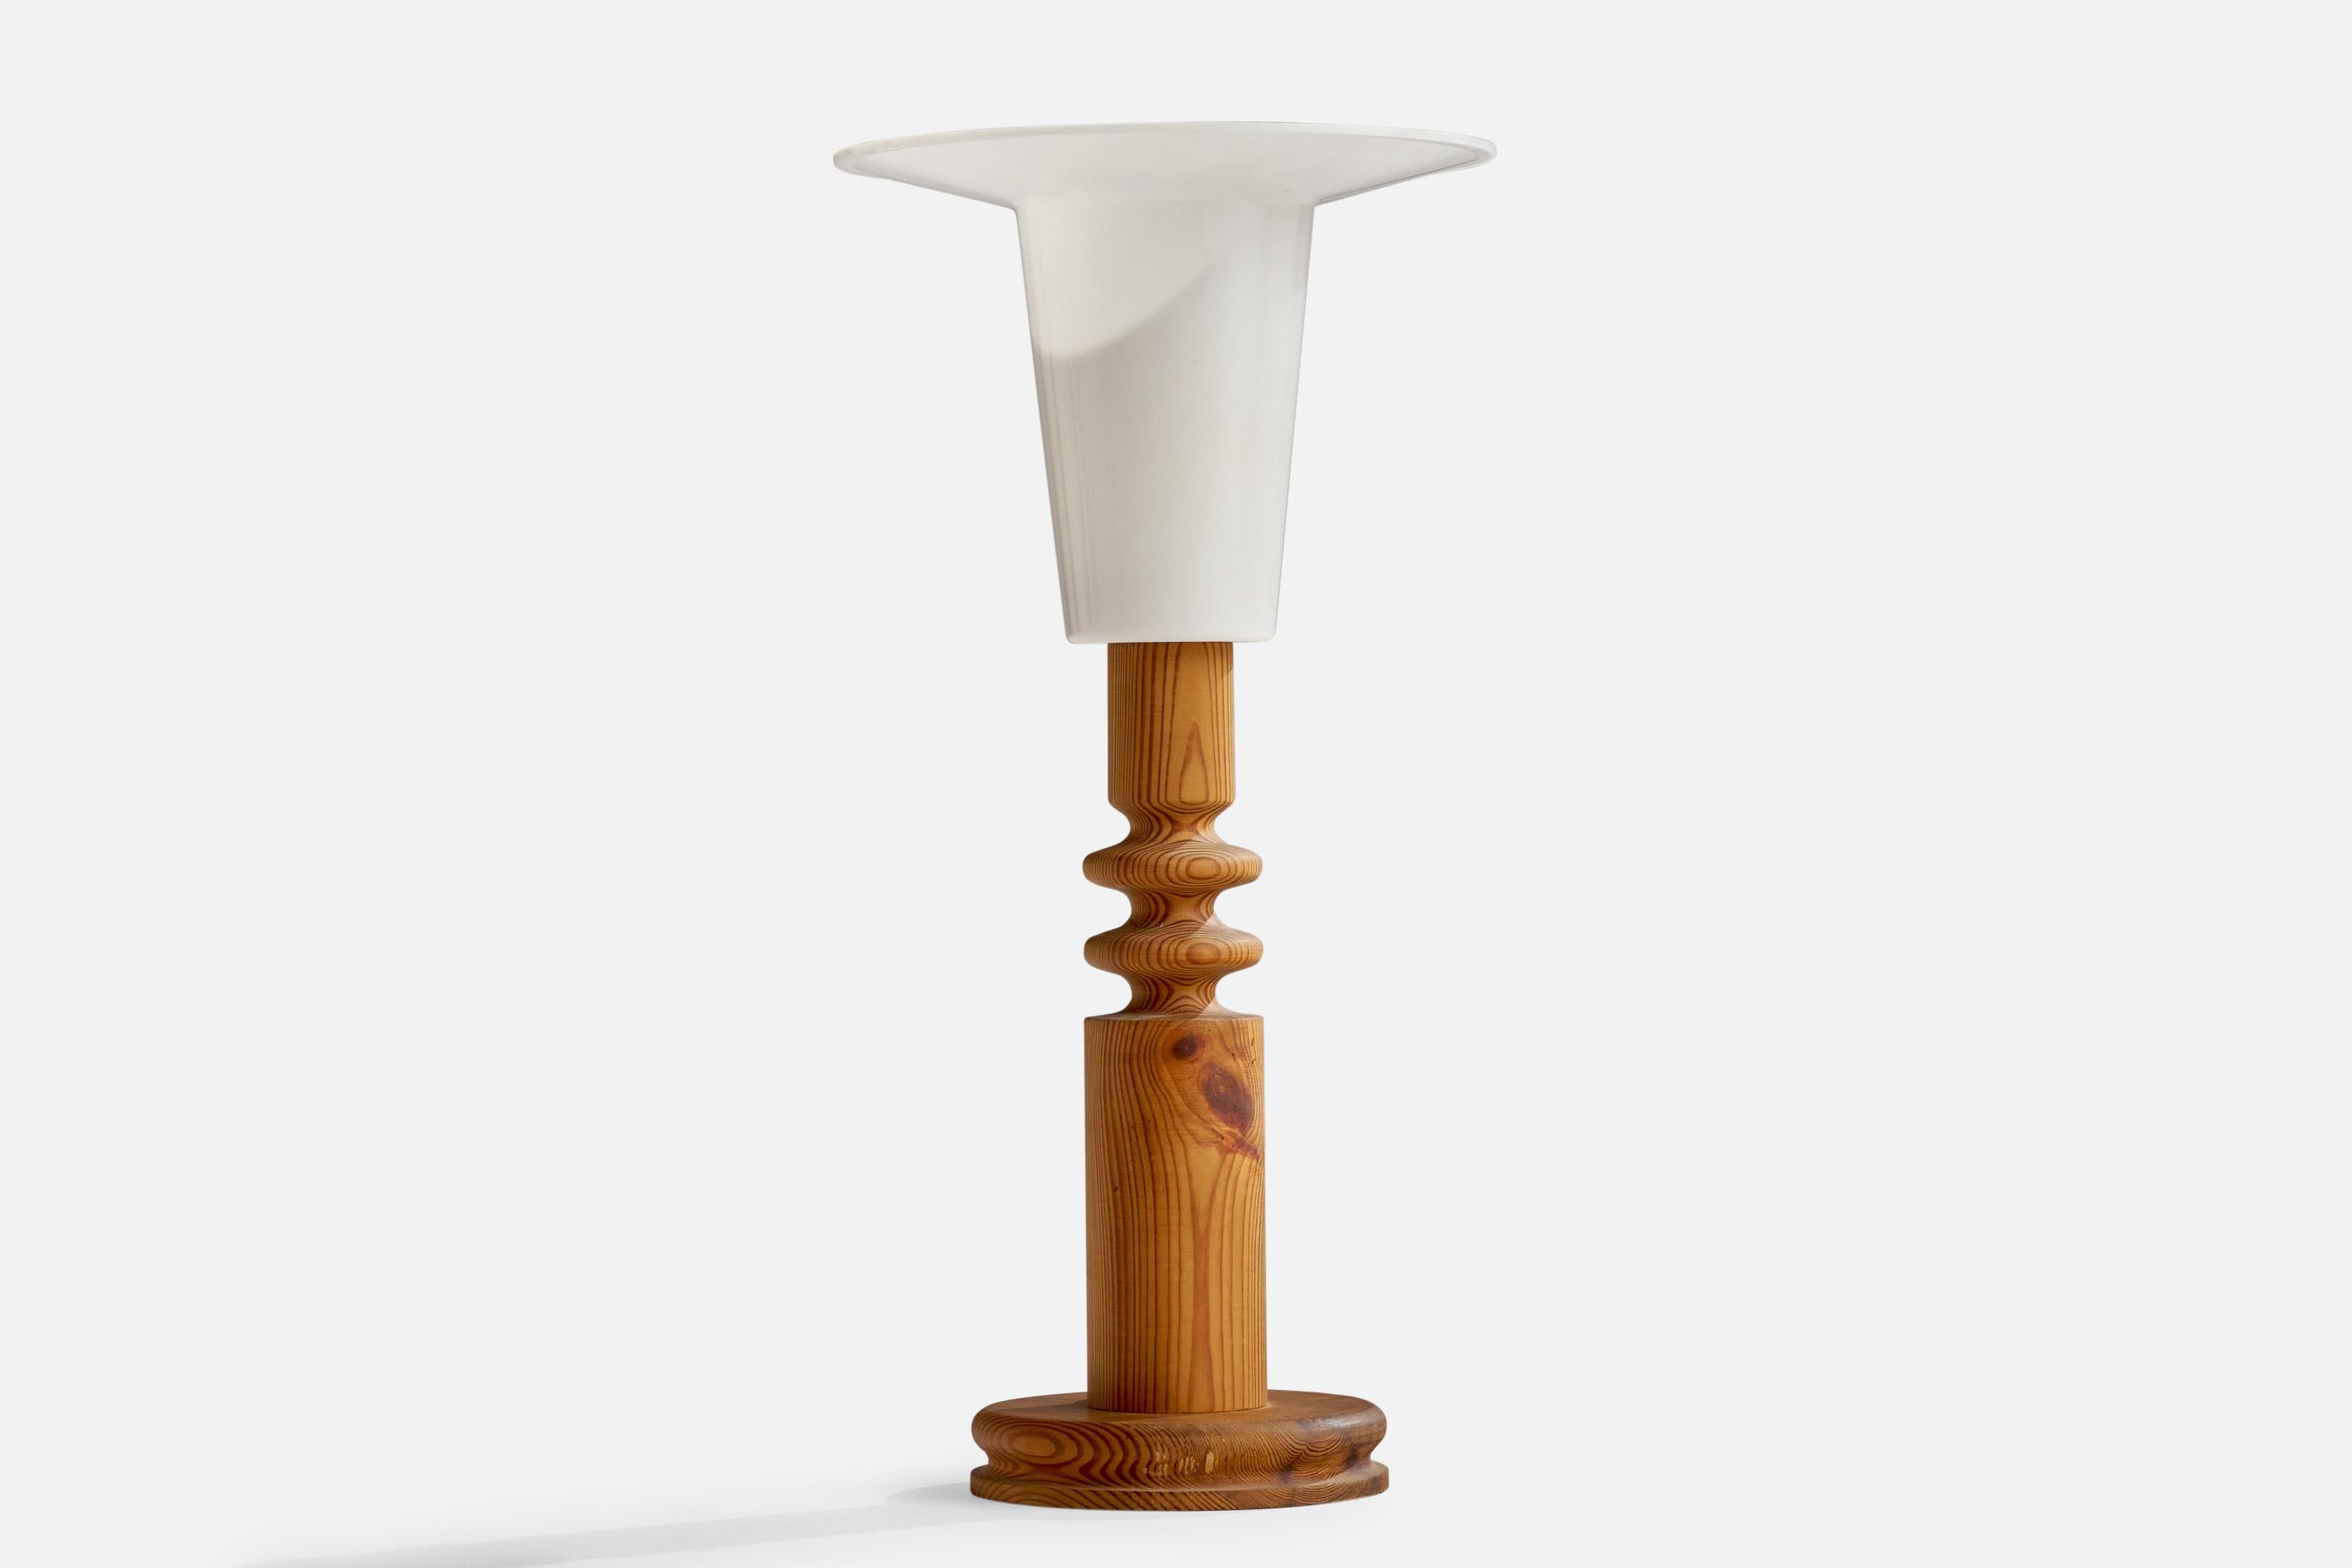 Lampe de table en pin et acrylique conçue par Design/One et Östen Kristiansson et produite par Luxus, Vittsjö, Suède, années 1970.

Dimensions globales (pouces) : 25.25